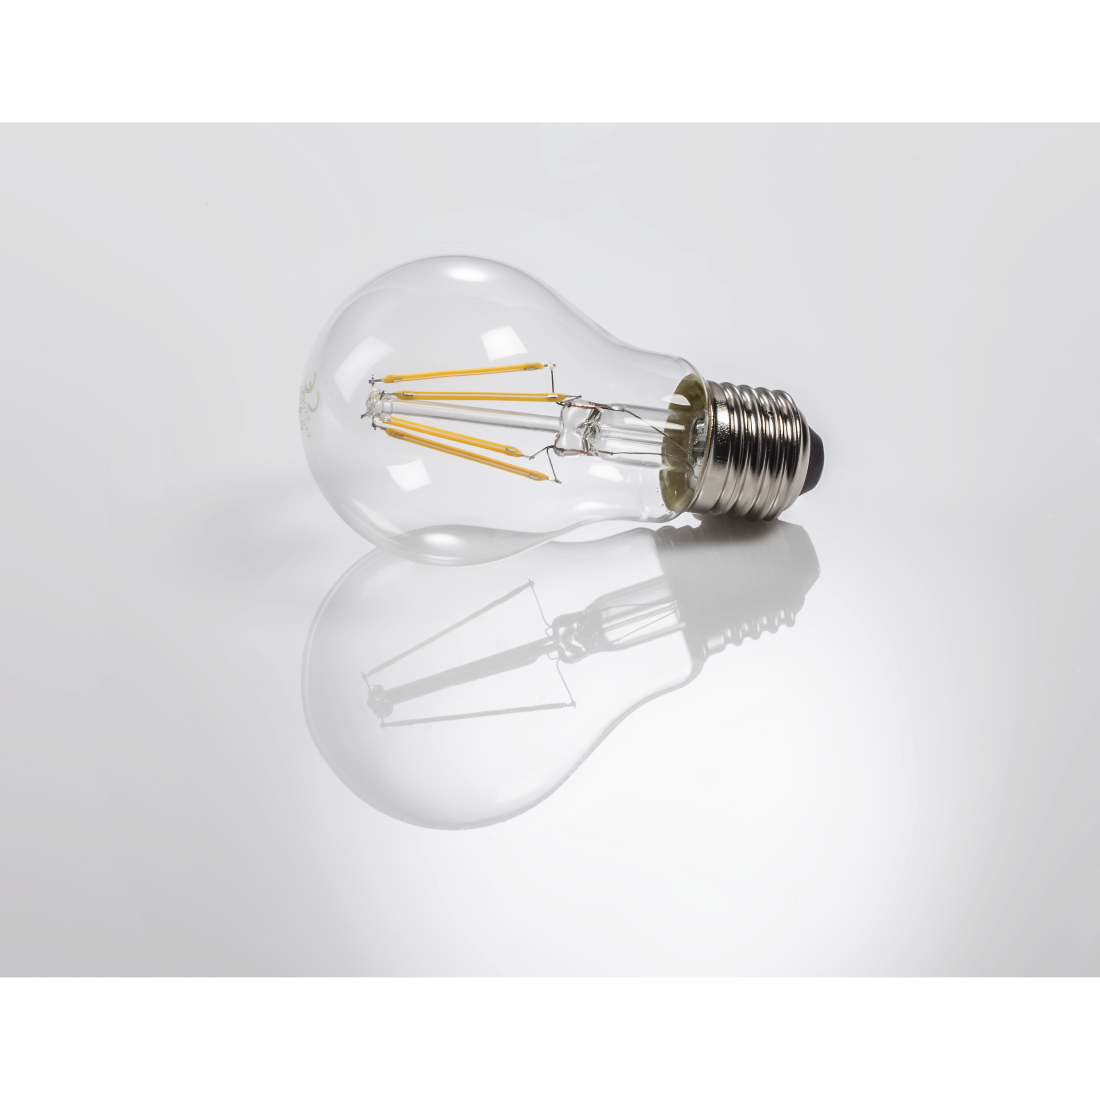 abx3 High-Res Image 3 - Xavax, Ampoule filament LED, E27, 806lm rempl. amp. incand. 60W, blc chd, 2p.